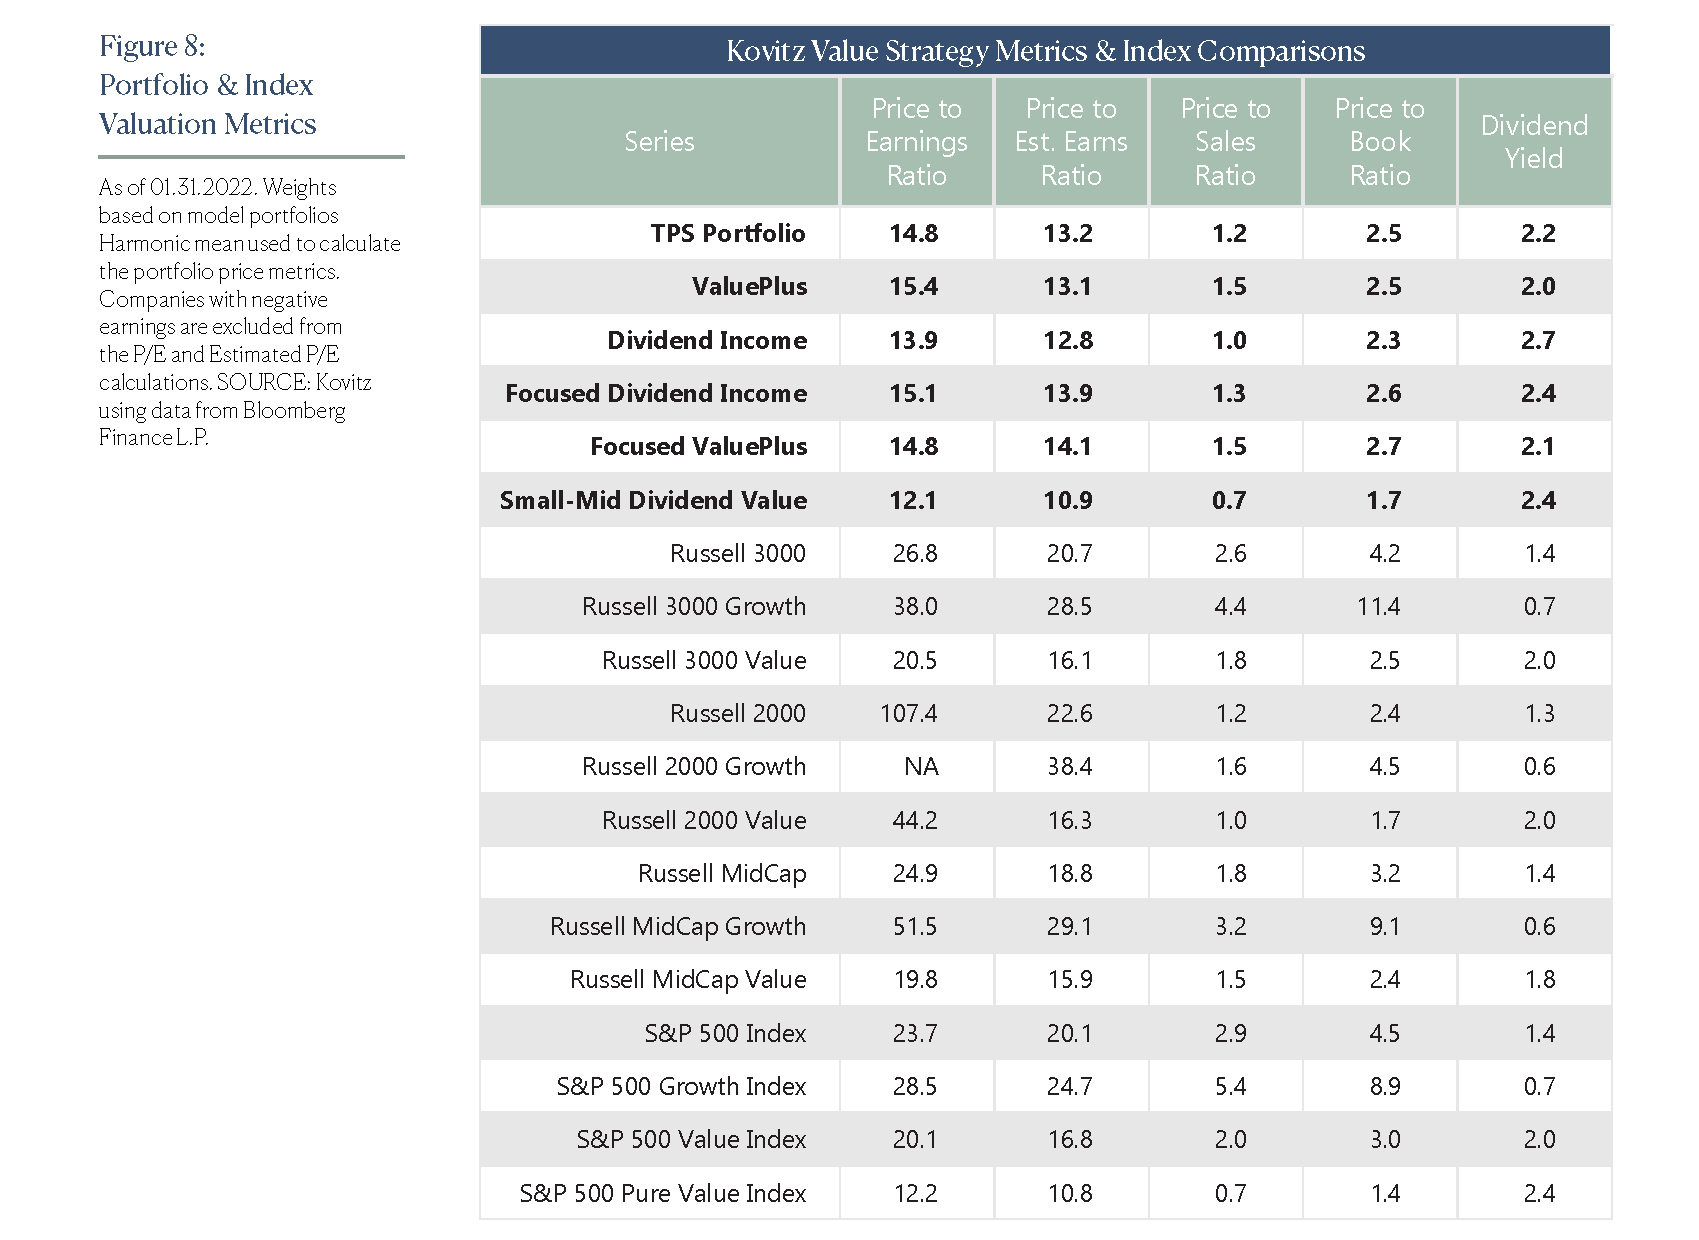 Portfolio & Index Valuation Metrics